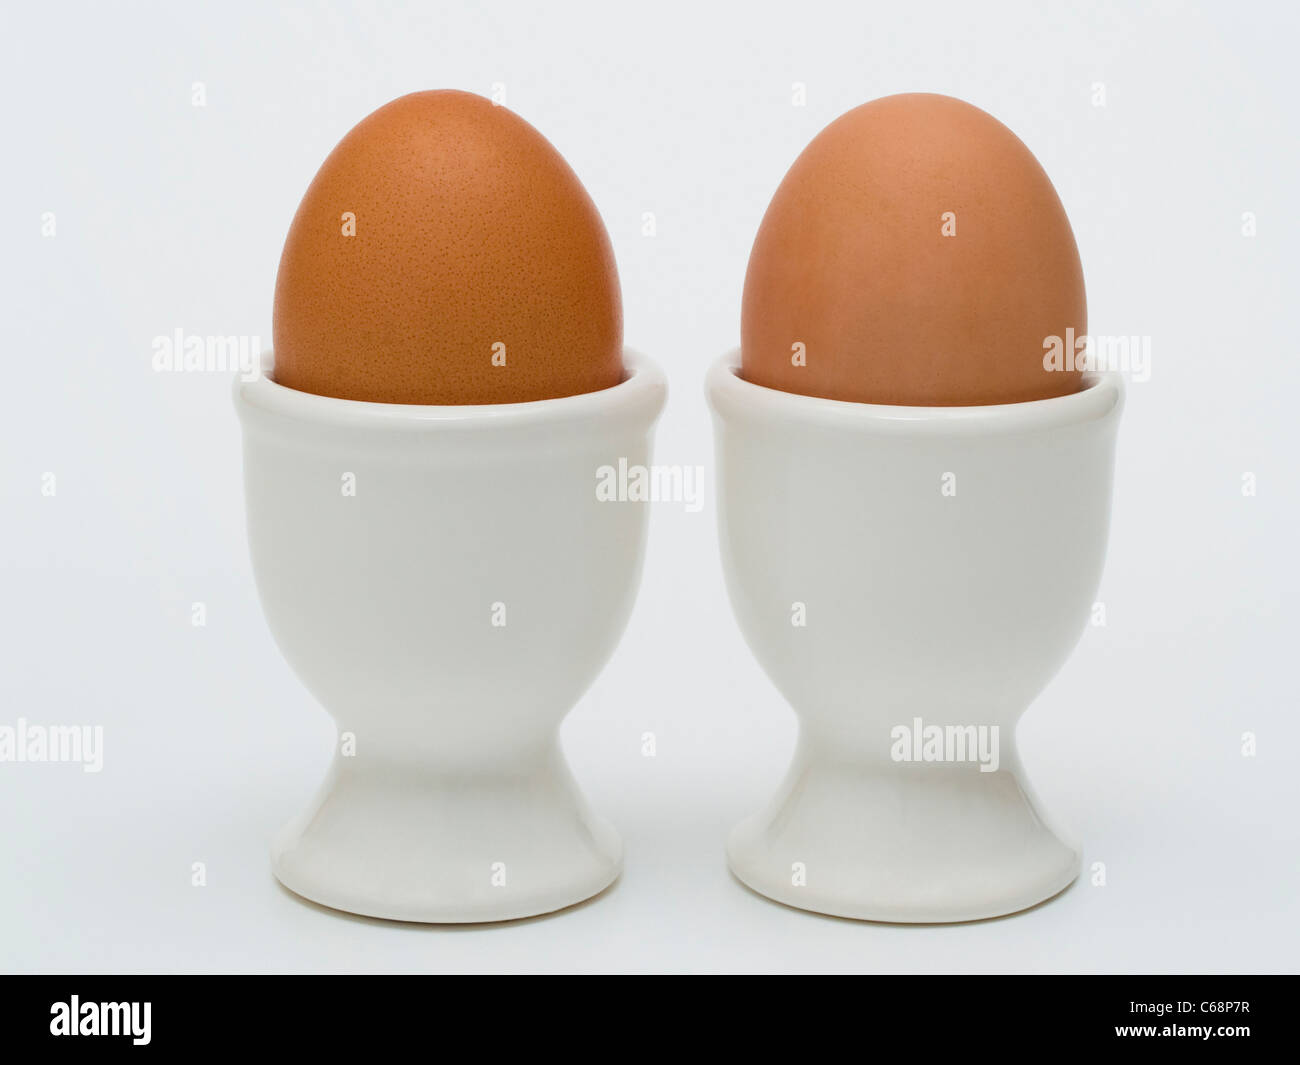 Zwei braunes Hühnereier stehen in Eierbechern | due eggcups con due Brown Hen's uova Foto Stock